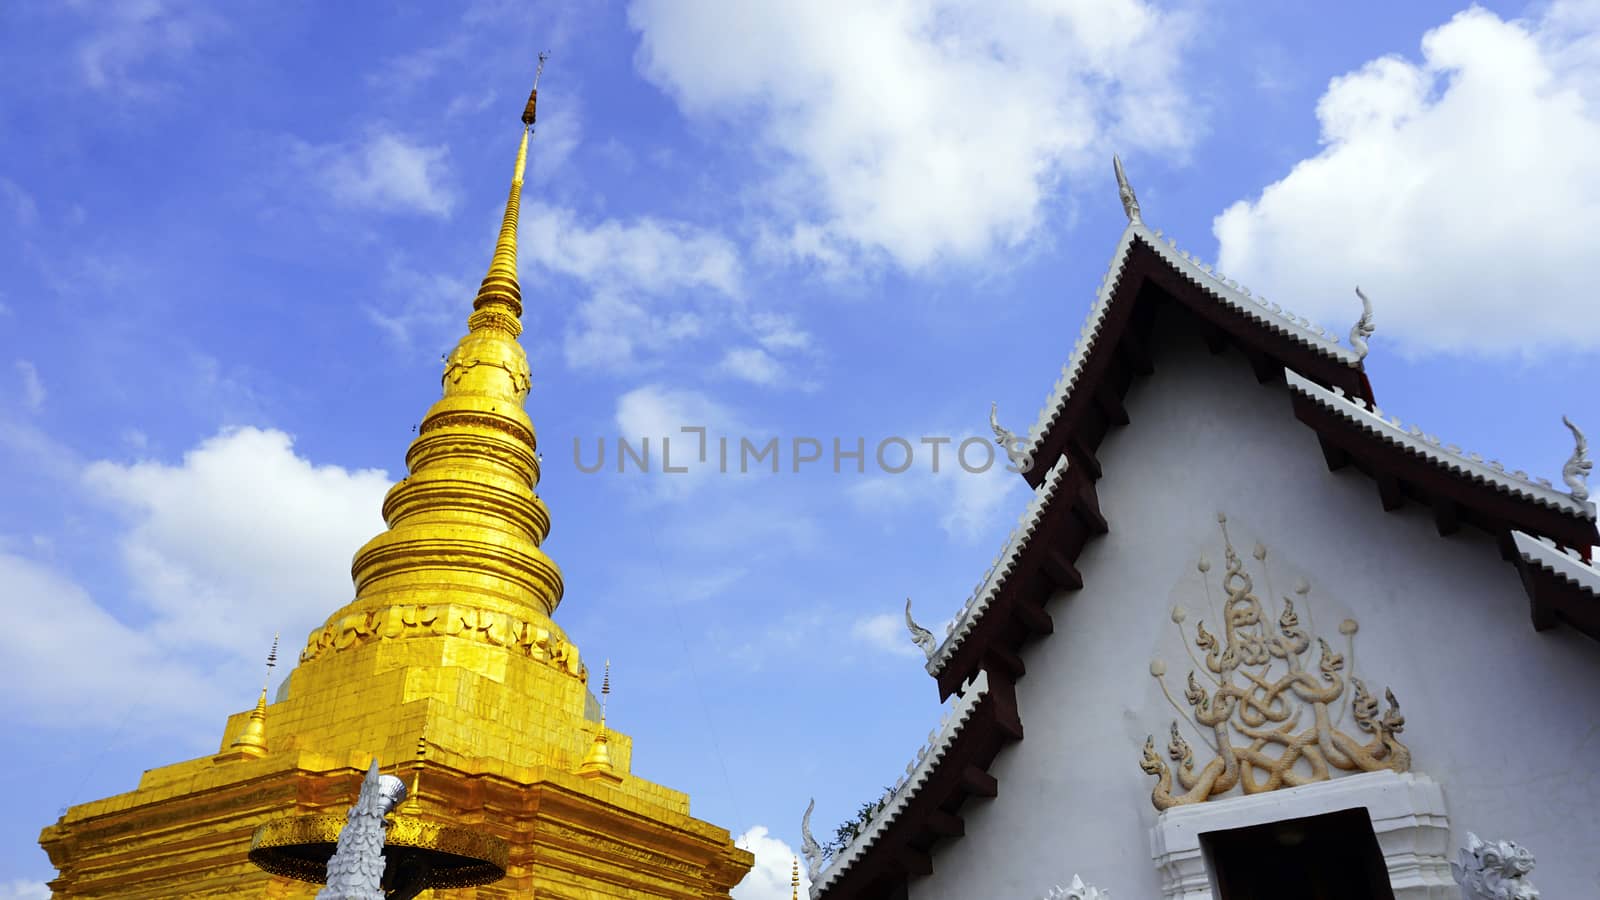 Wat Chae Haeng and Pagoda in Temple, nan, Thailand

